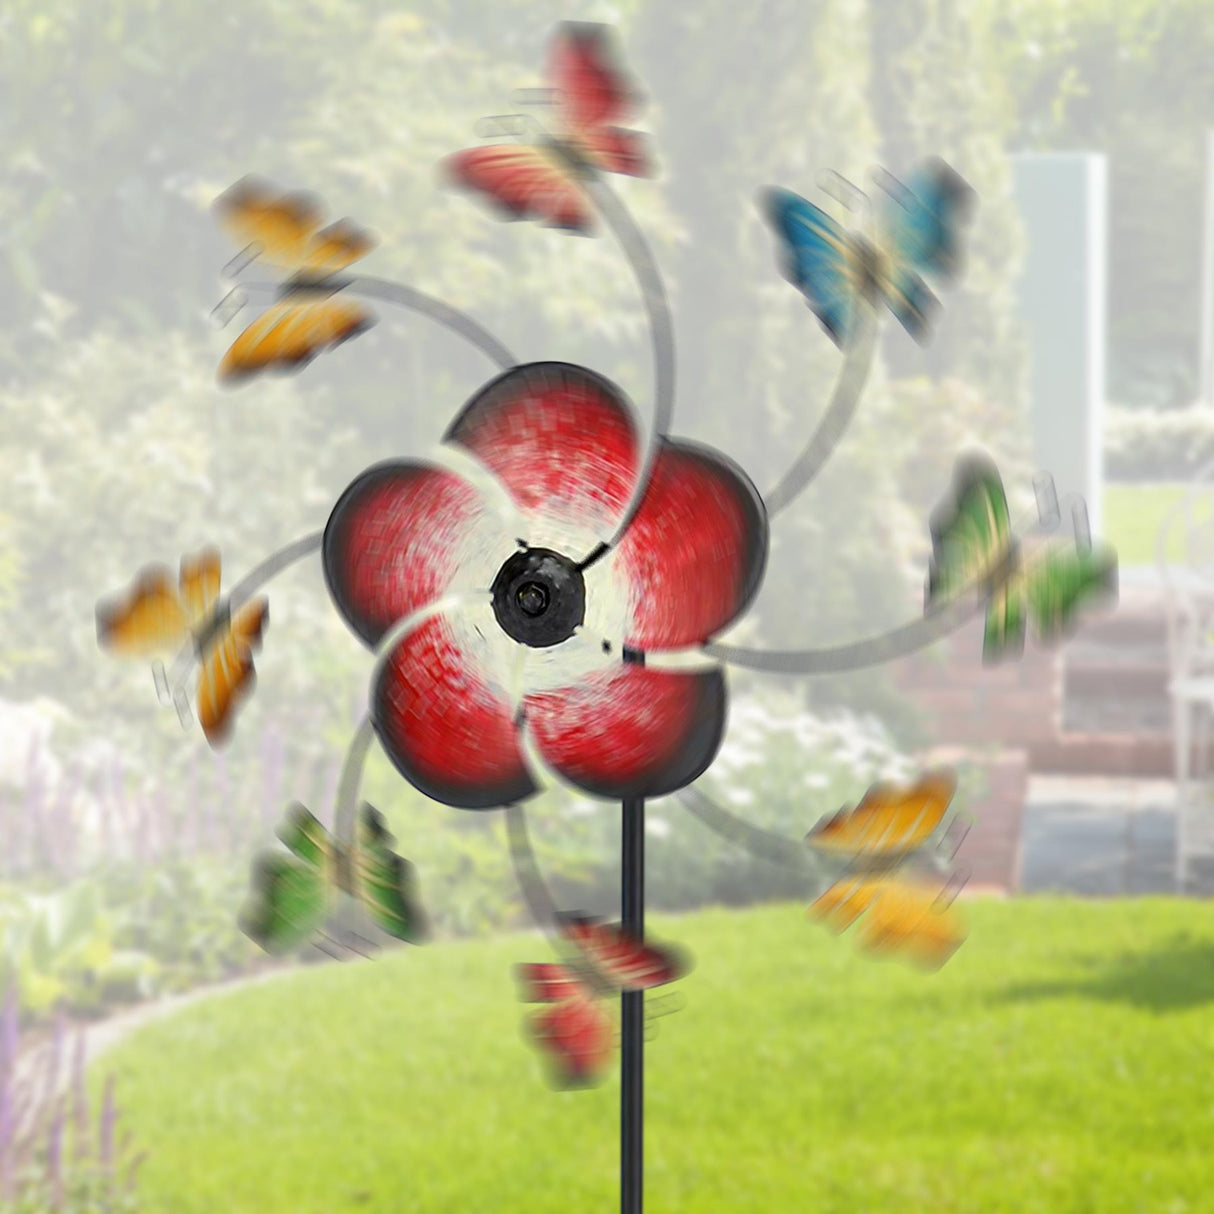 Large Freestanding Metal Garden Windmill - Butterflies Design